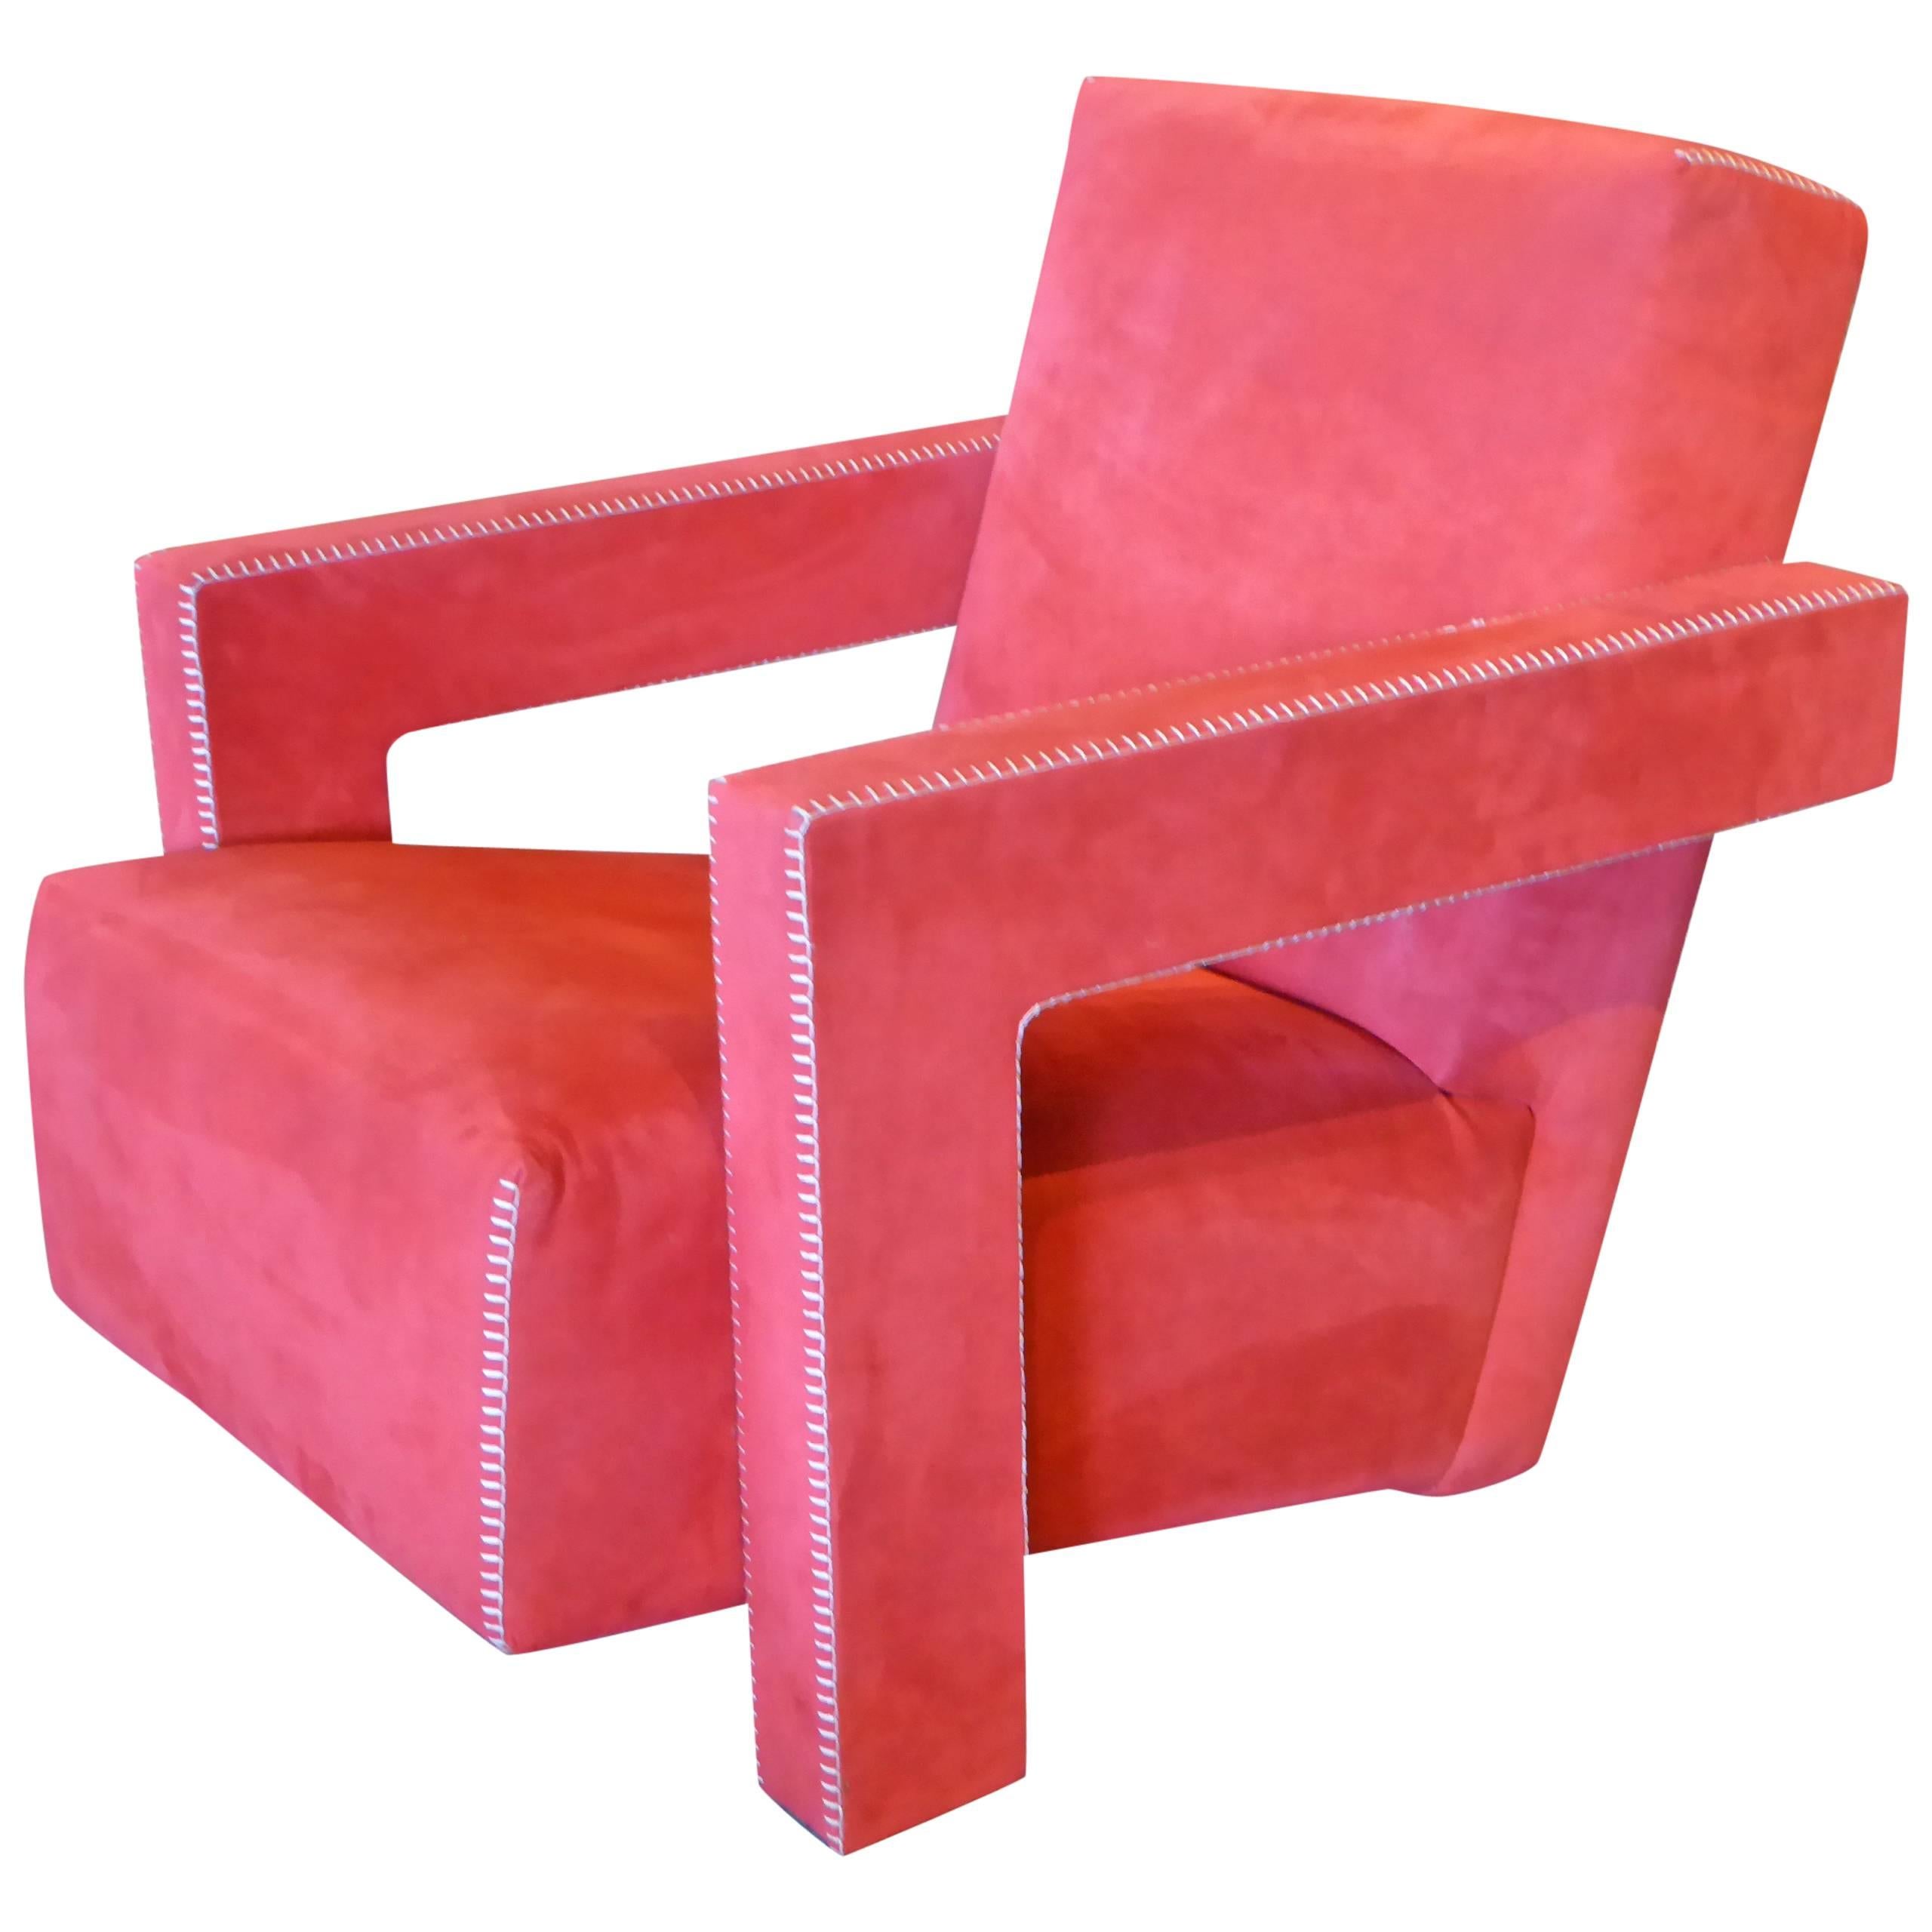 Gerrit Rietveld Utrecht Chair by Cassina